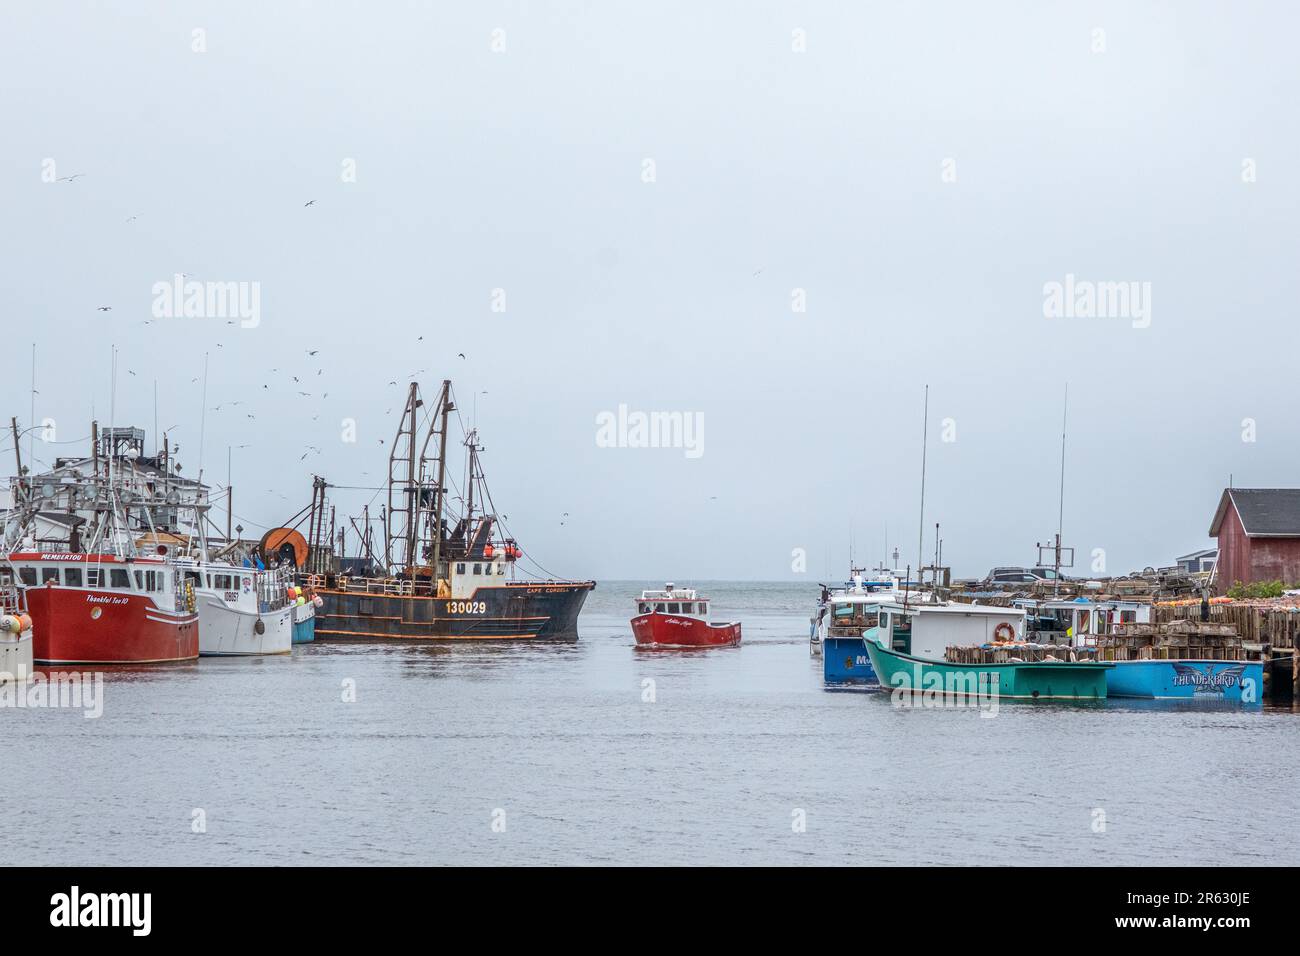 Un petit bateau de pêche au homard entre dans le port de glace Bay en passant par de grands bateaux lors d'une journée de printemps sombre et humide pendant la saison du homard. Banque D'Images